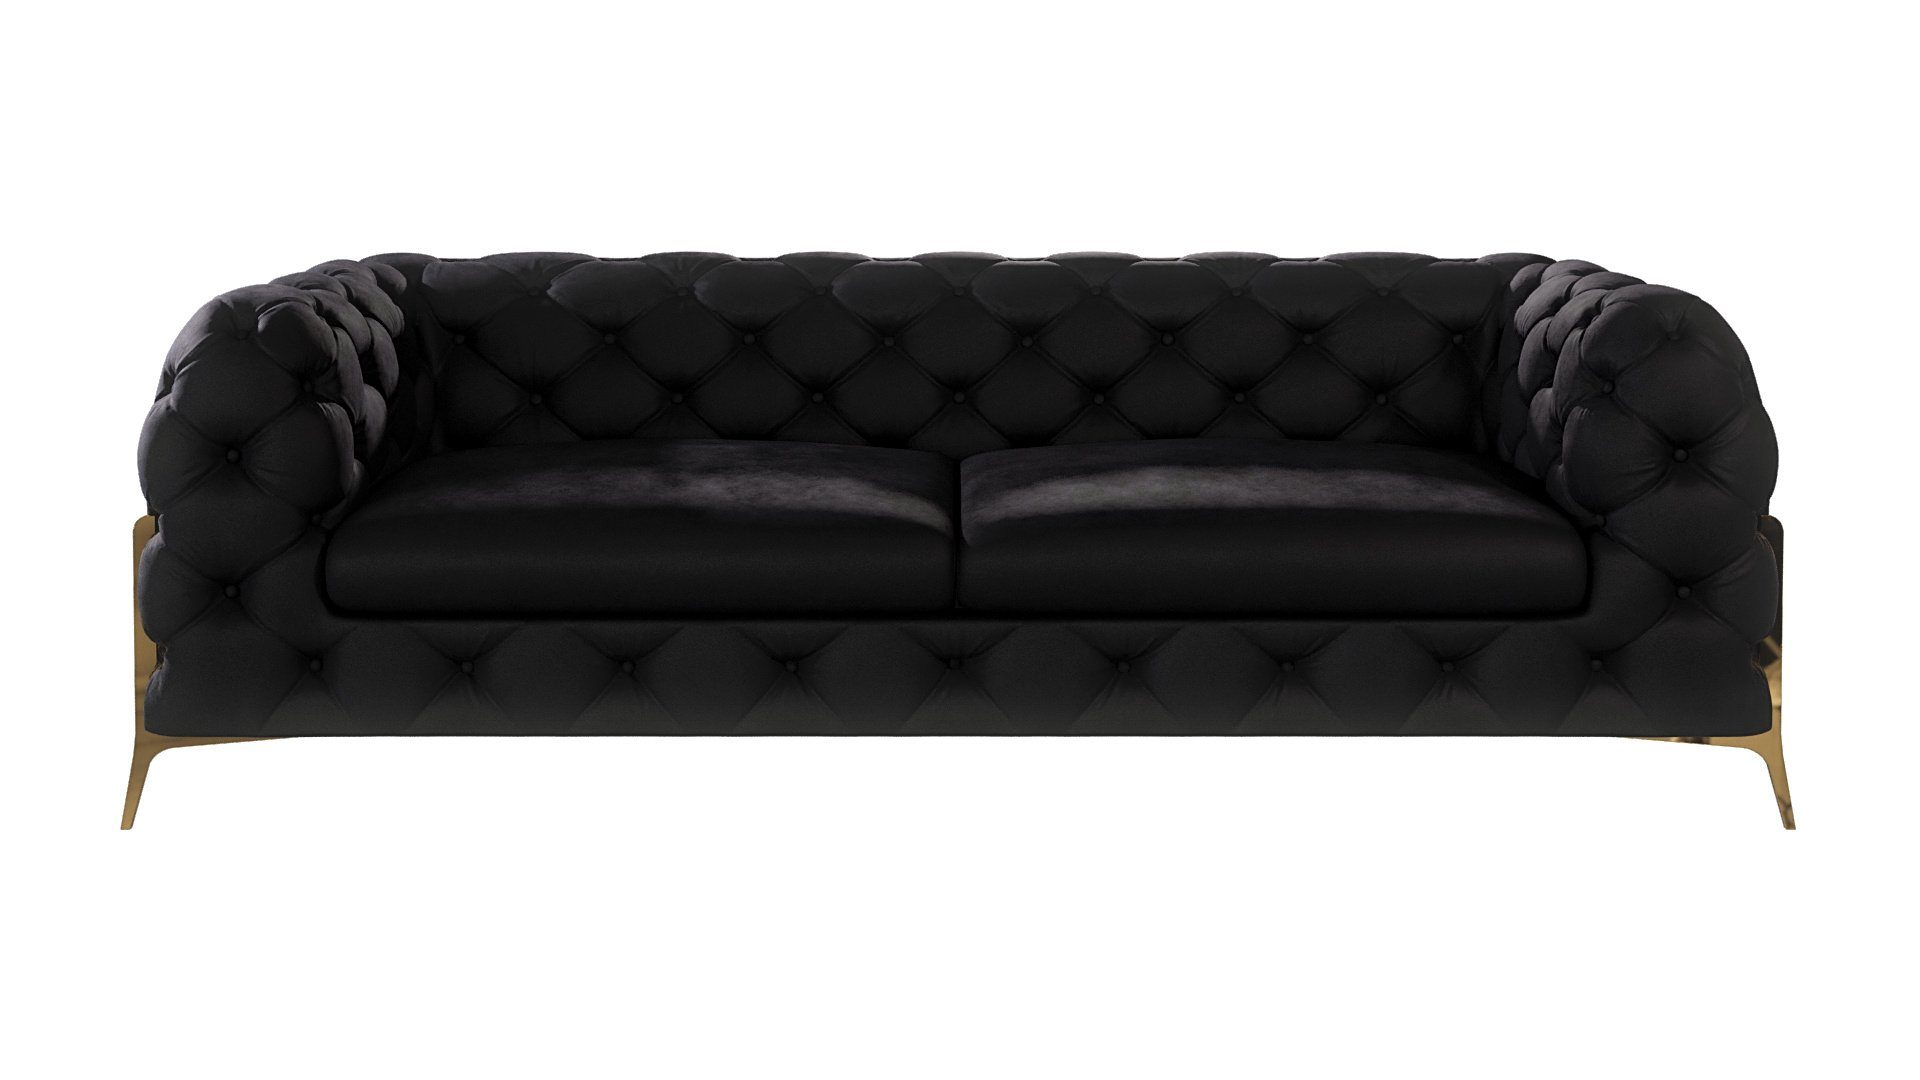 Metall S-Style Chesterfield Möbel Wellenfederung Ashley Schwarz mit Füßen, Goldene Sofa mit 3-Sitzer